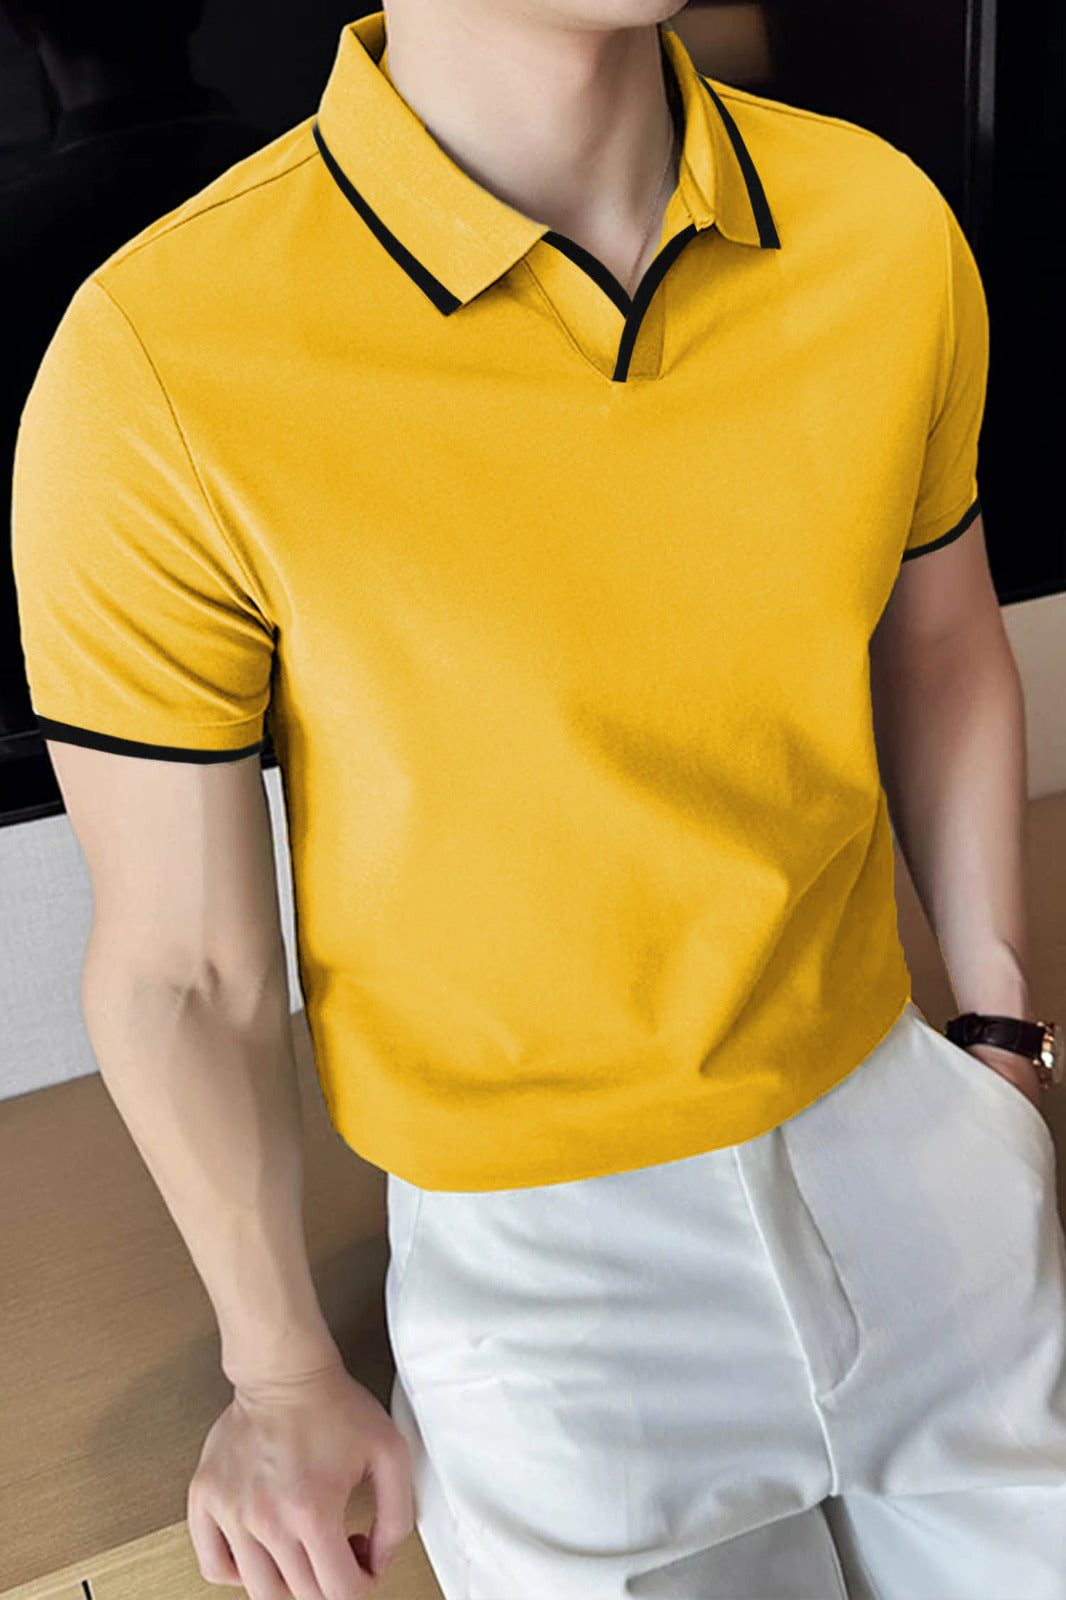 Plain Classic Collar Jumper Polo Shirt